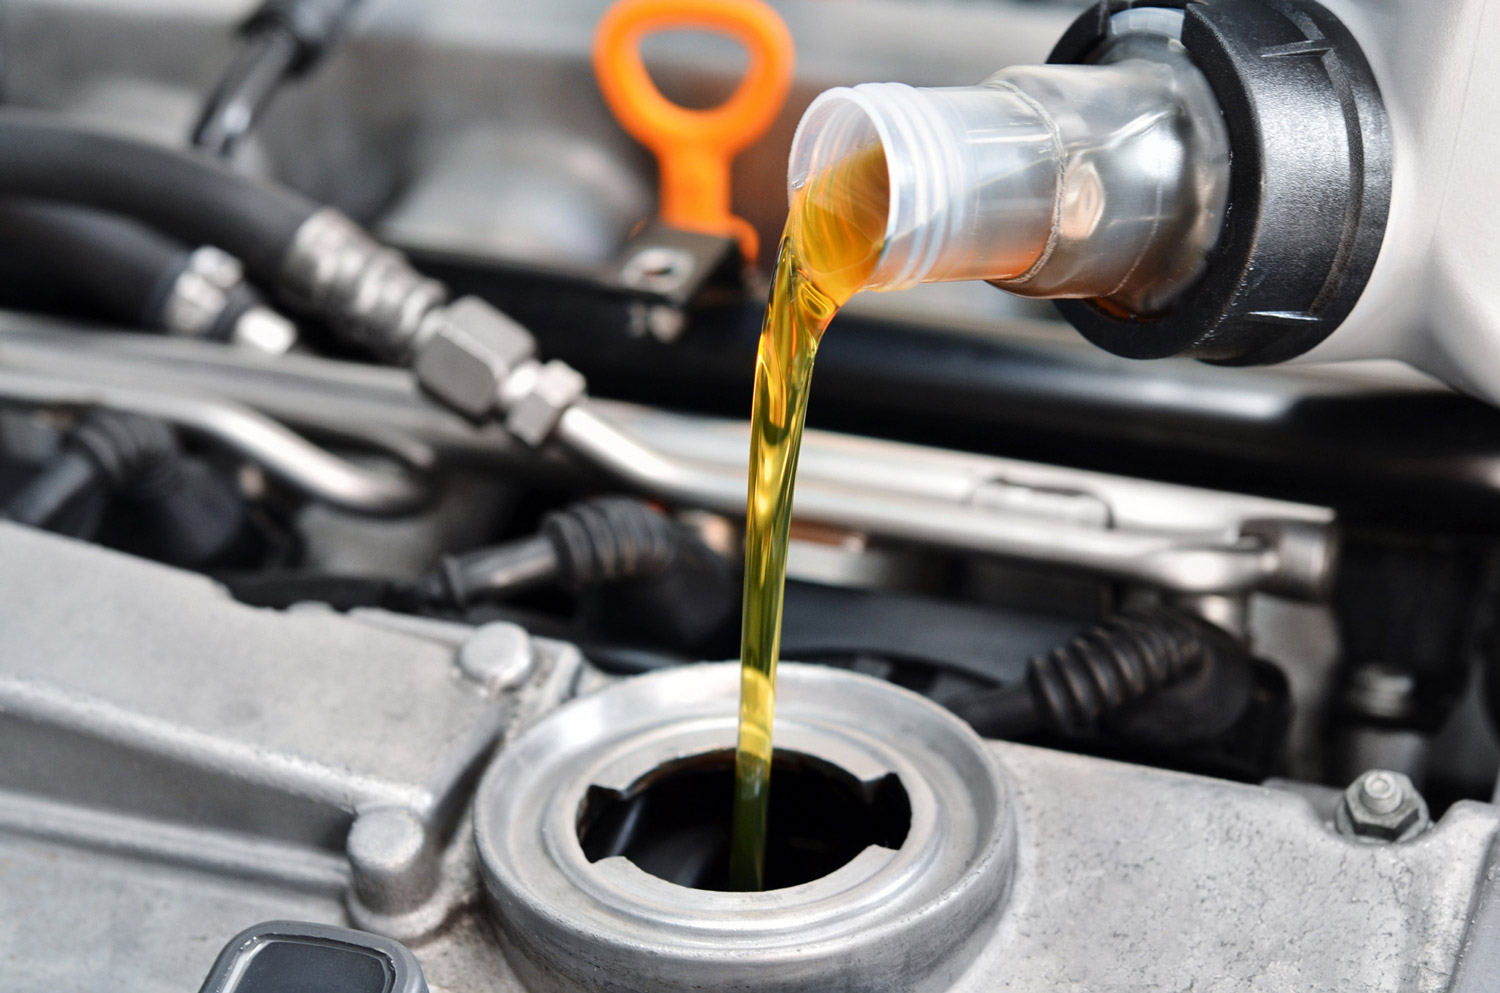 Maggiori informazioni su "Olio motore, trasmissione e antigelo nei veicoli: differenze tra viscosità e perché vanno rispettate"